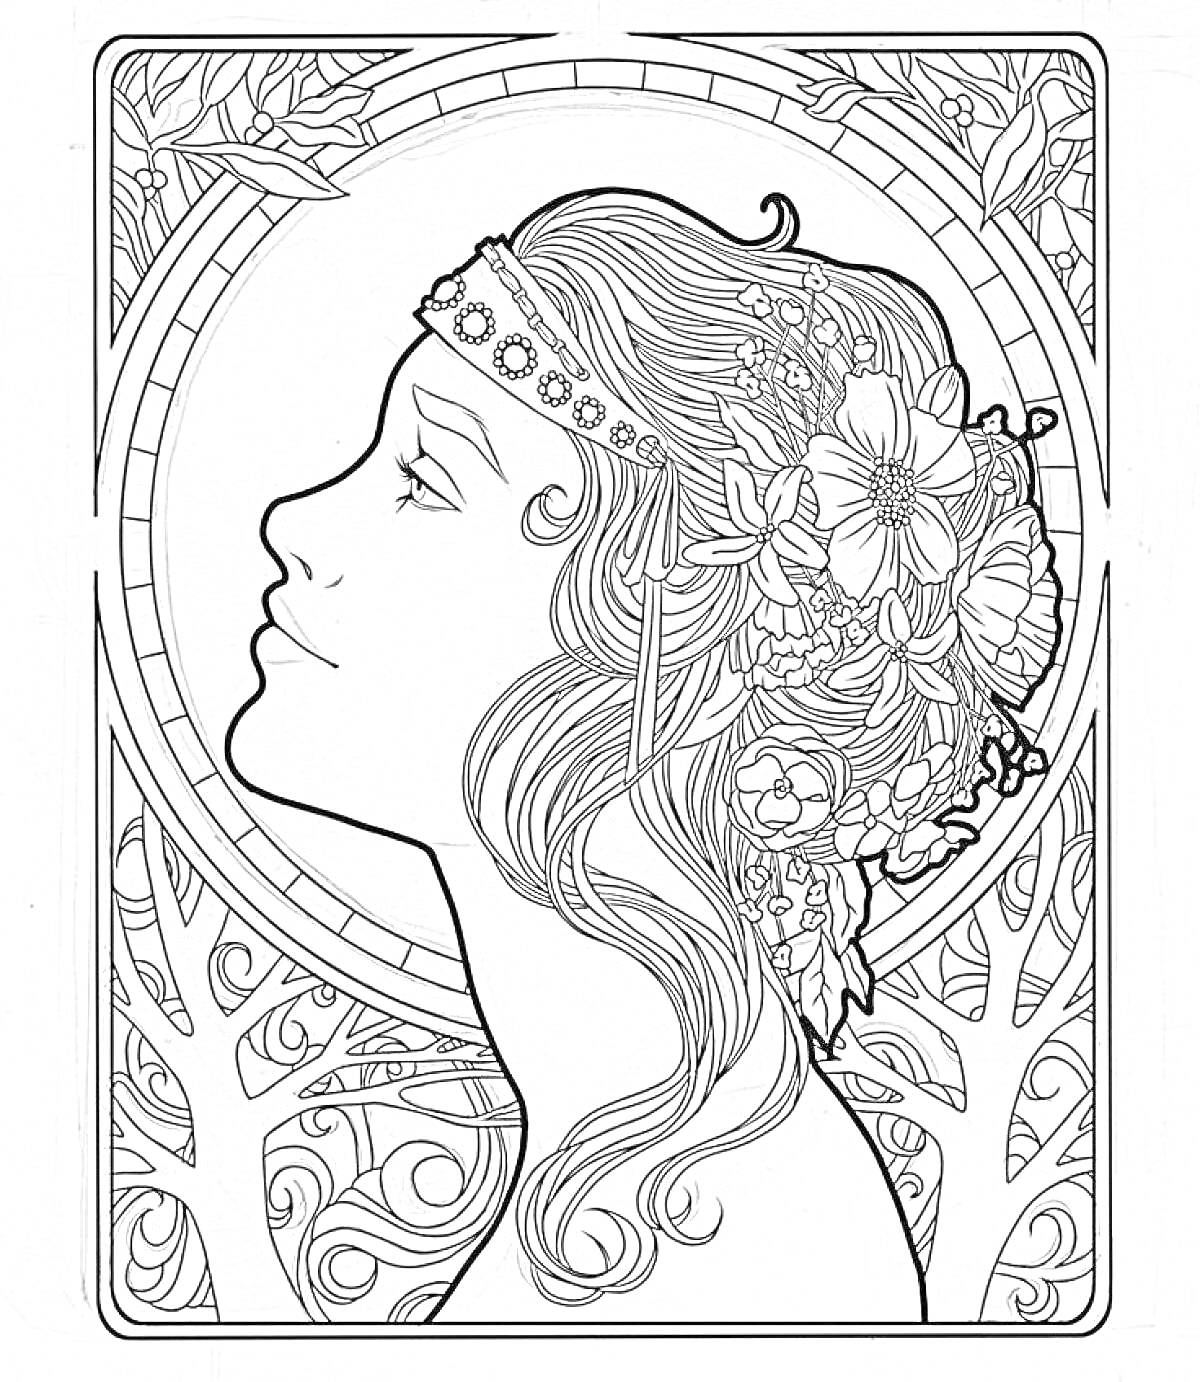 Раскраска Профиль девушки с длинными волосами, украшенными цветами и лентой, на фоне абстрактных узоров и деревьев.